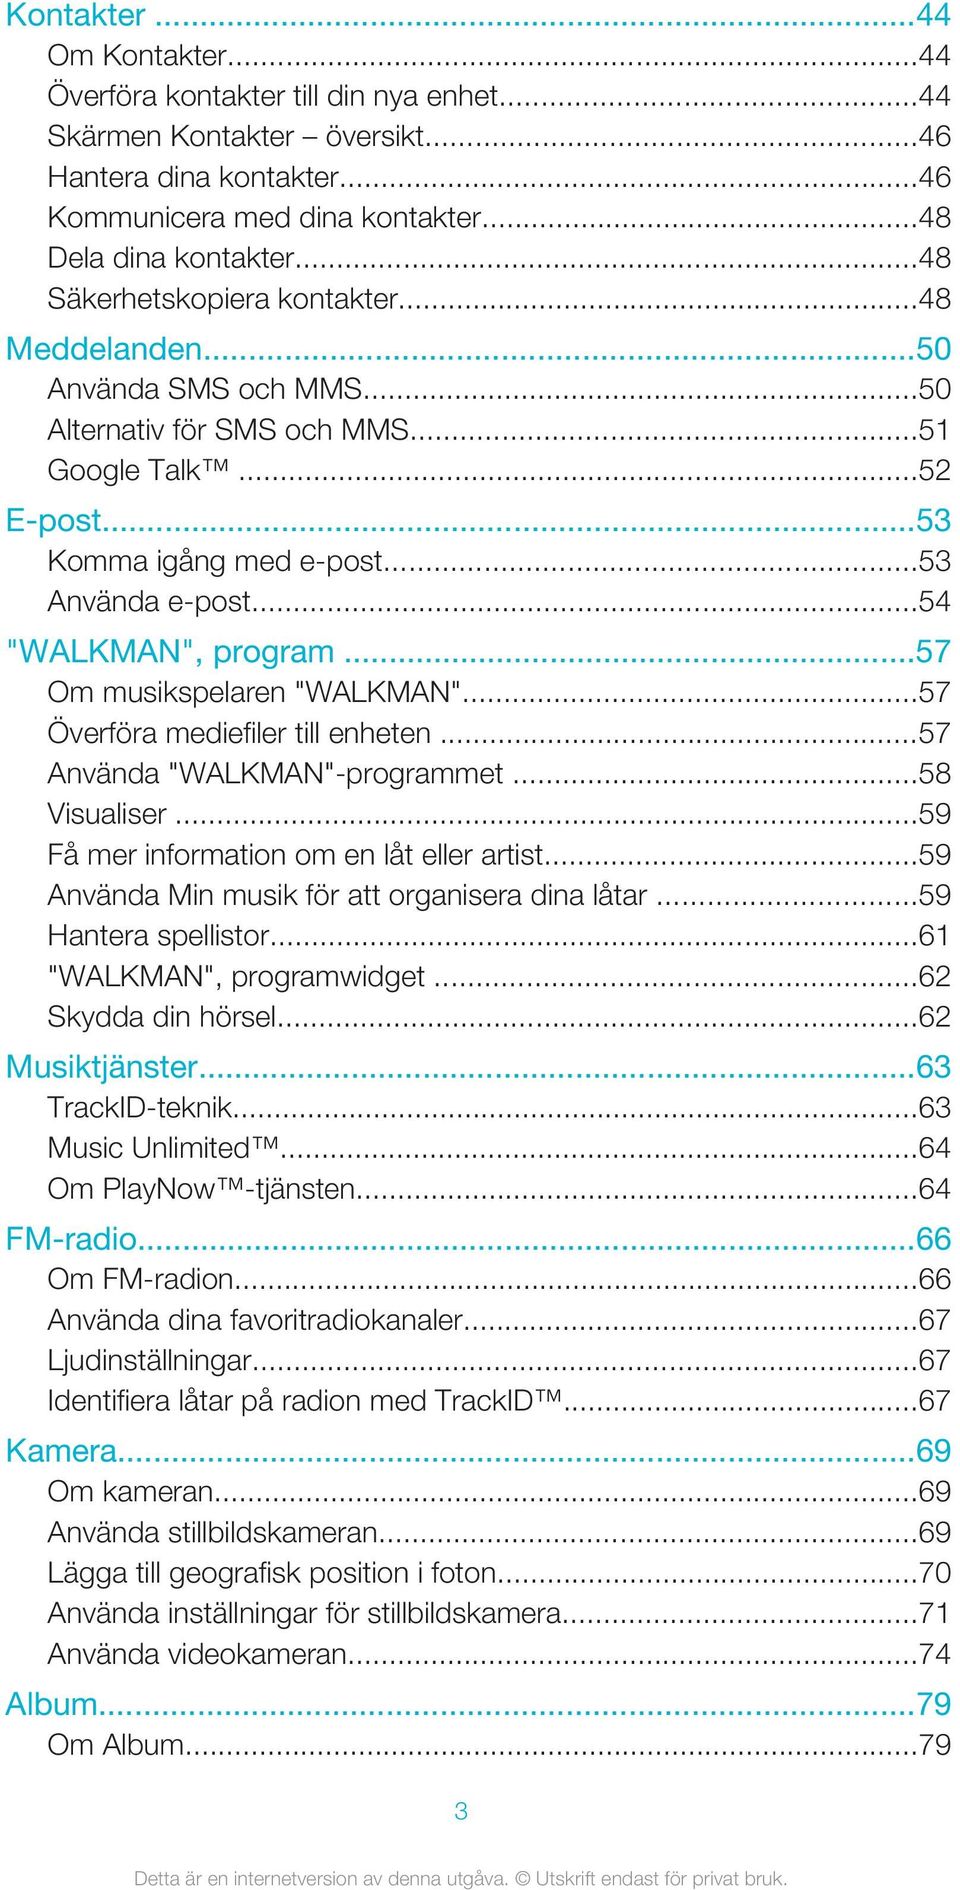 ..54 "WALKMAN", program...57 Om musikspelaren "WALKMAN"...57 Överföra mediefiler till enheten...57 Använda "WALKMAN"-programmet...58 Visualiser...59 Få mer information om en låt eller artist.